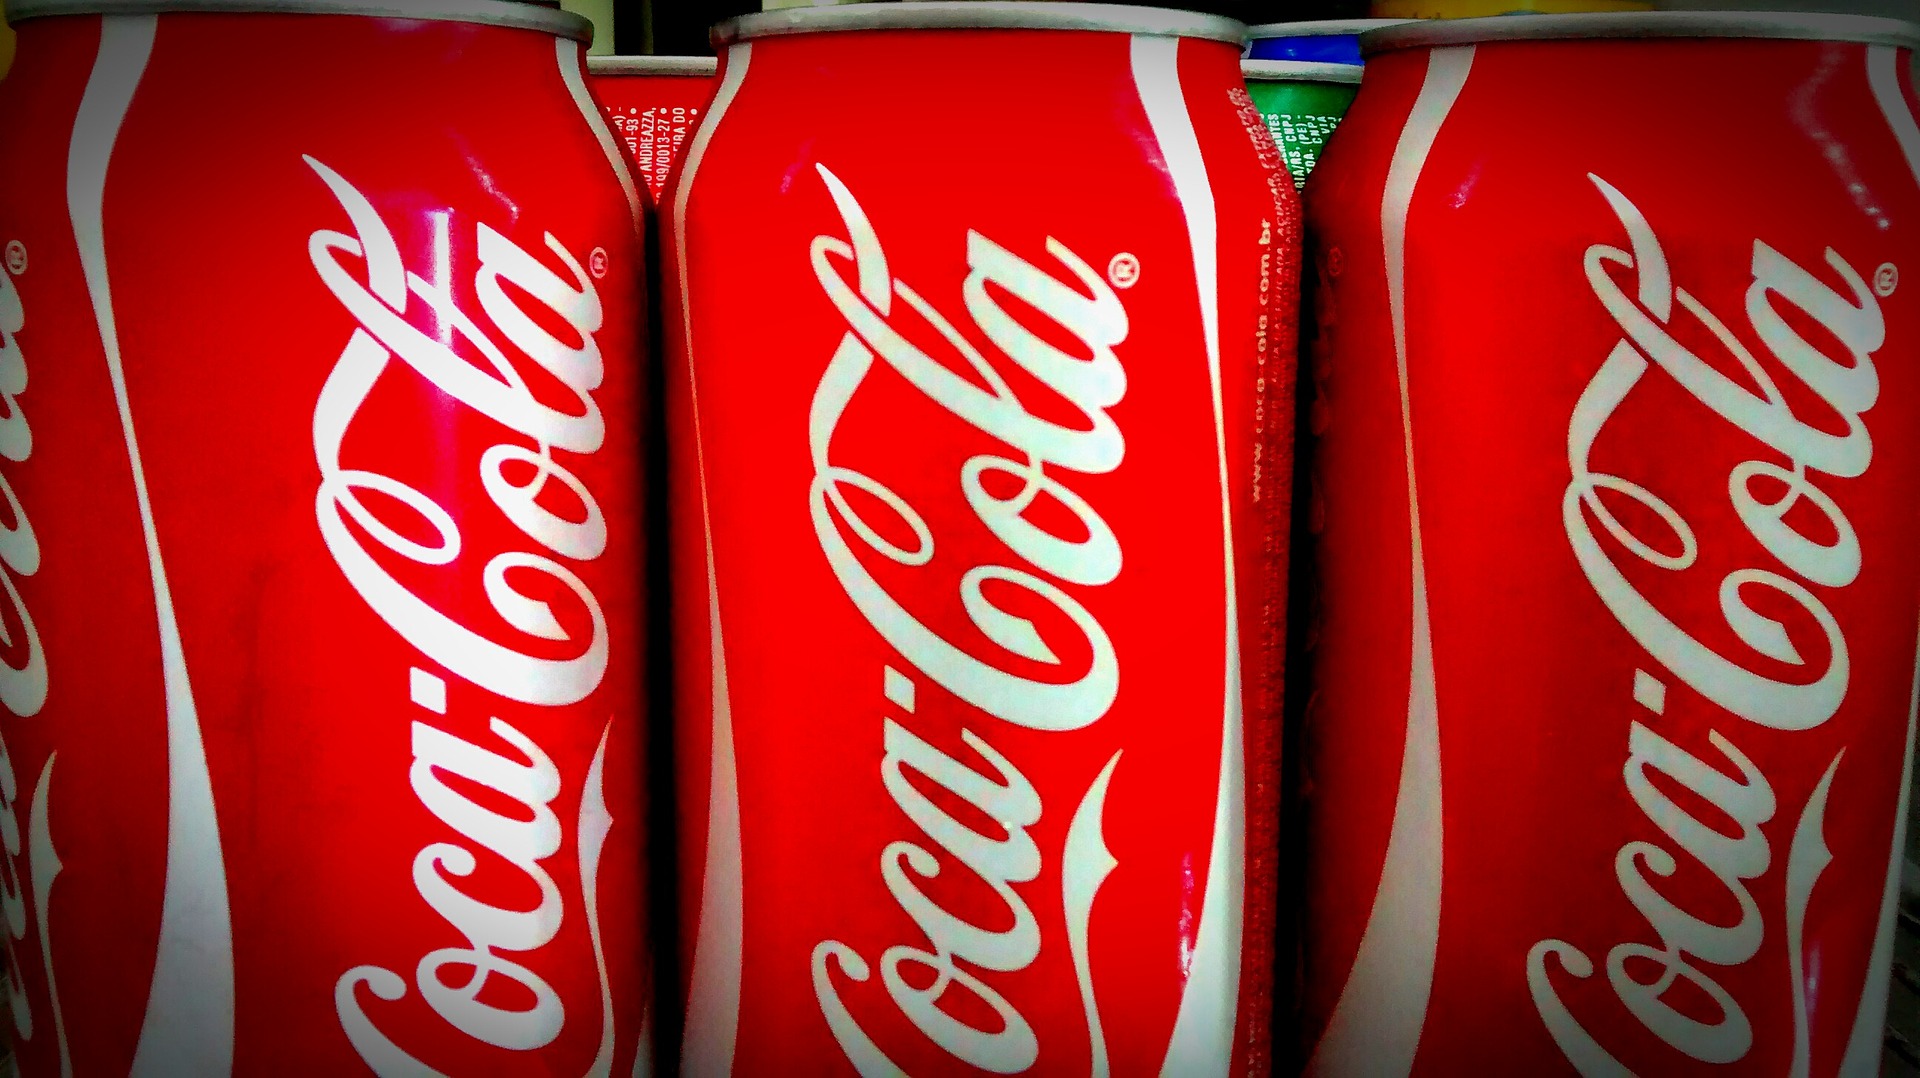 Ceny Coca-Coli poszybowały w górę  - Zdjęcie główne